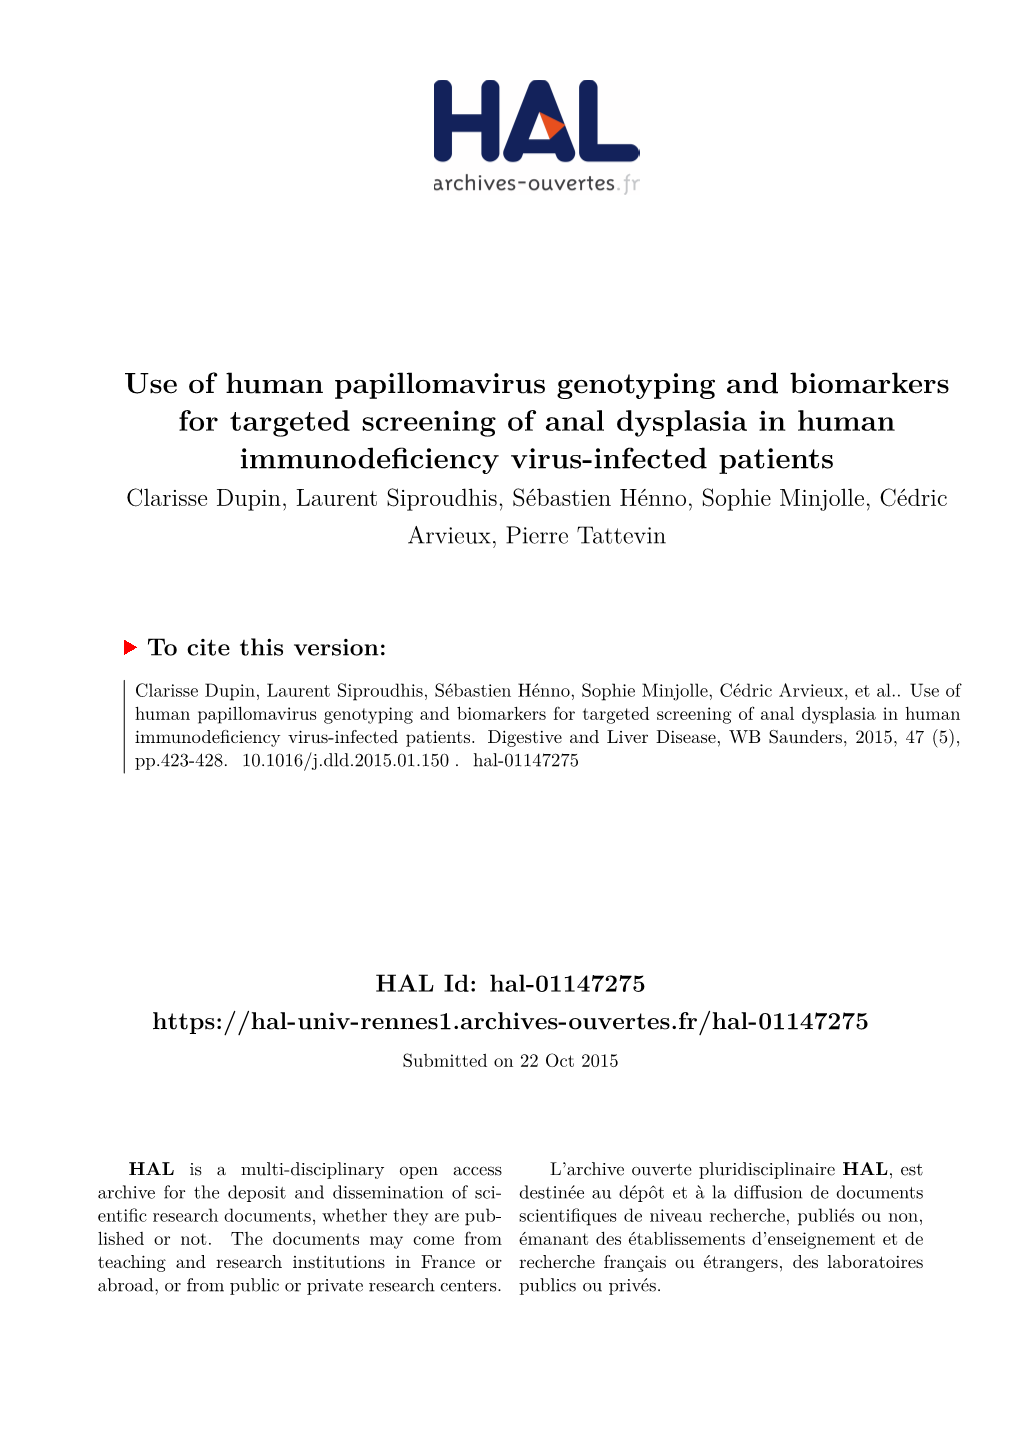 Use of Human Papillomavirus Ge